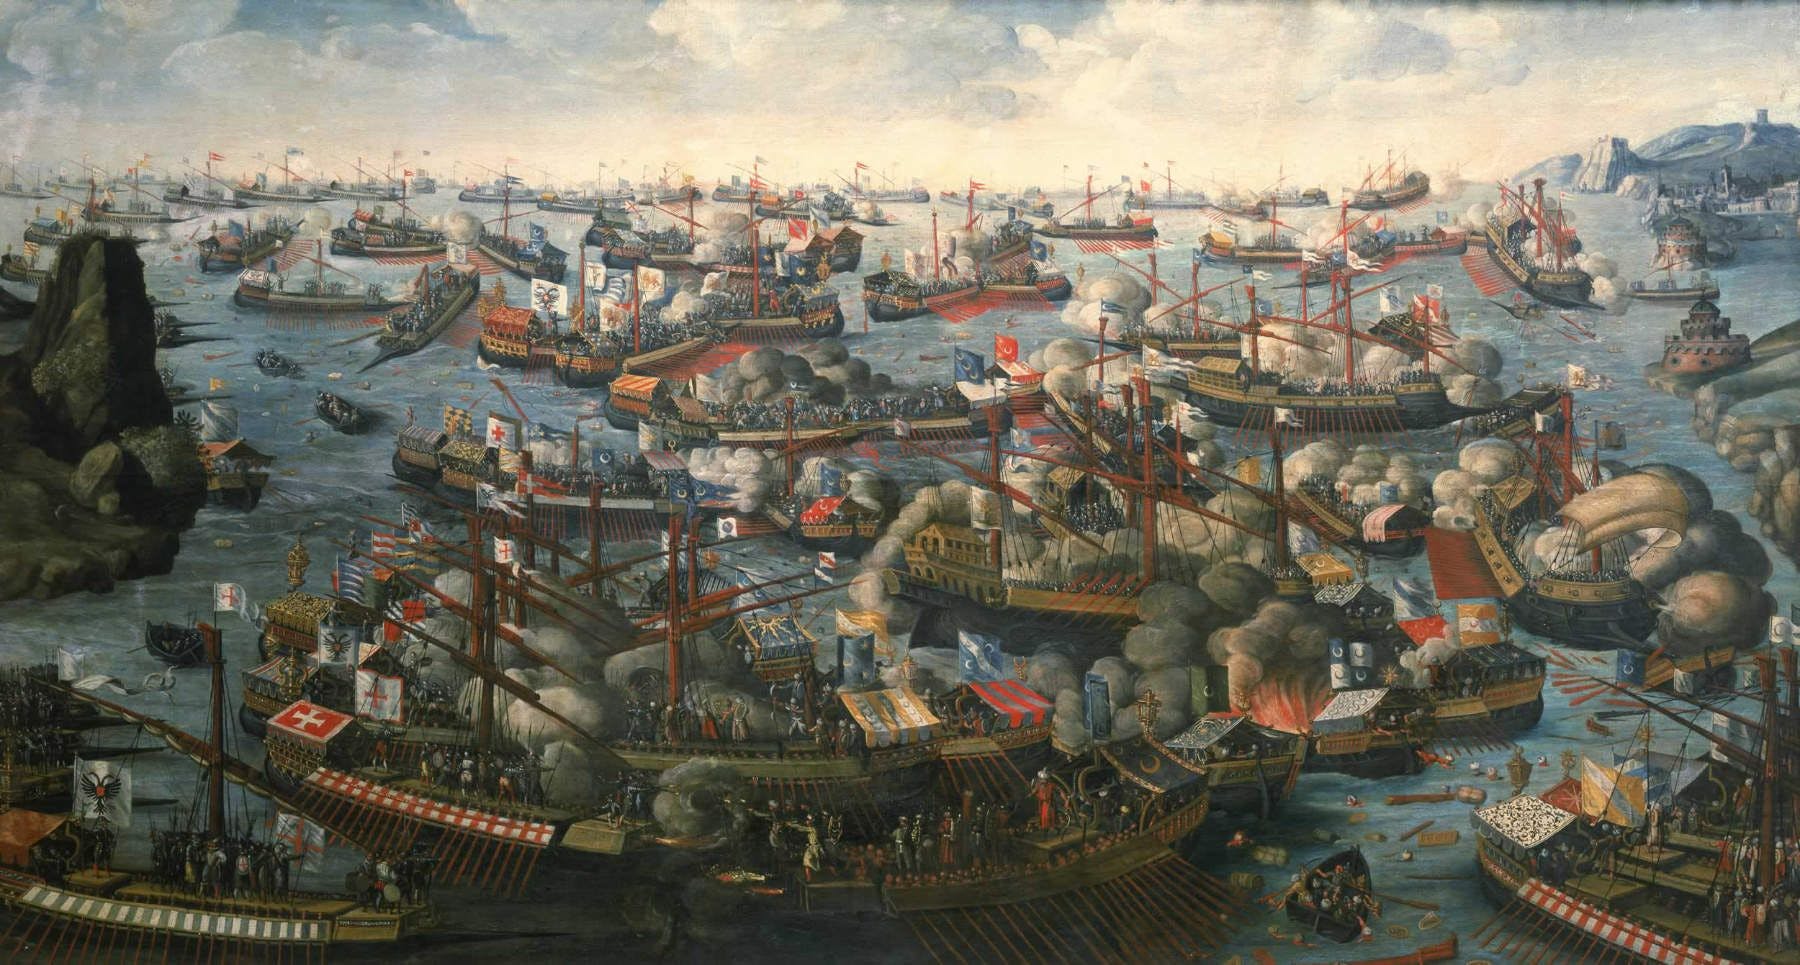 battle of lepanto ships letter 1571 Catholic